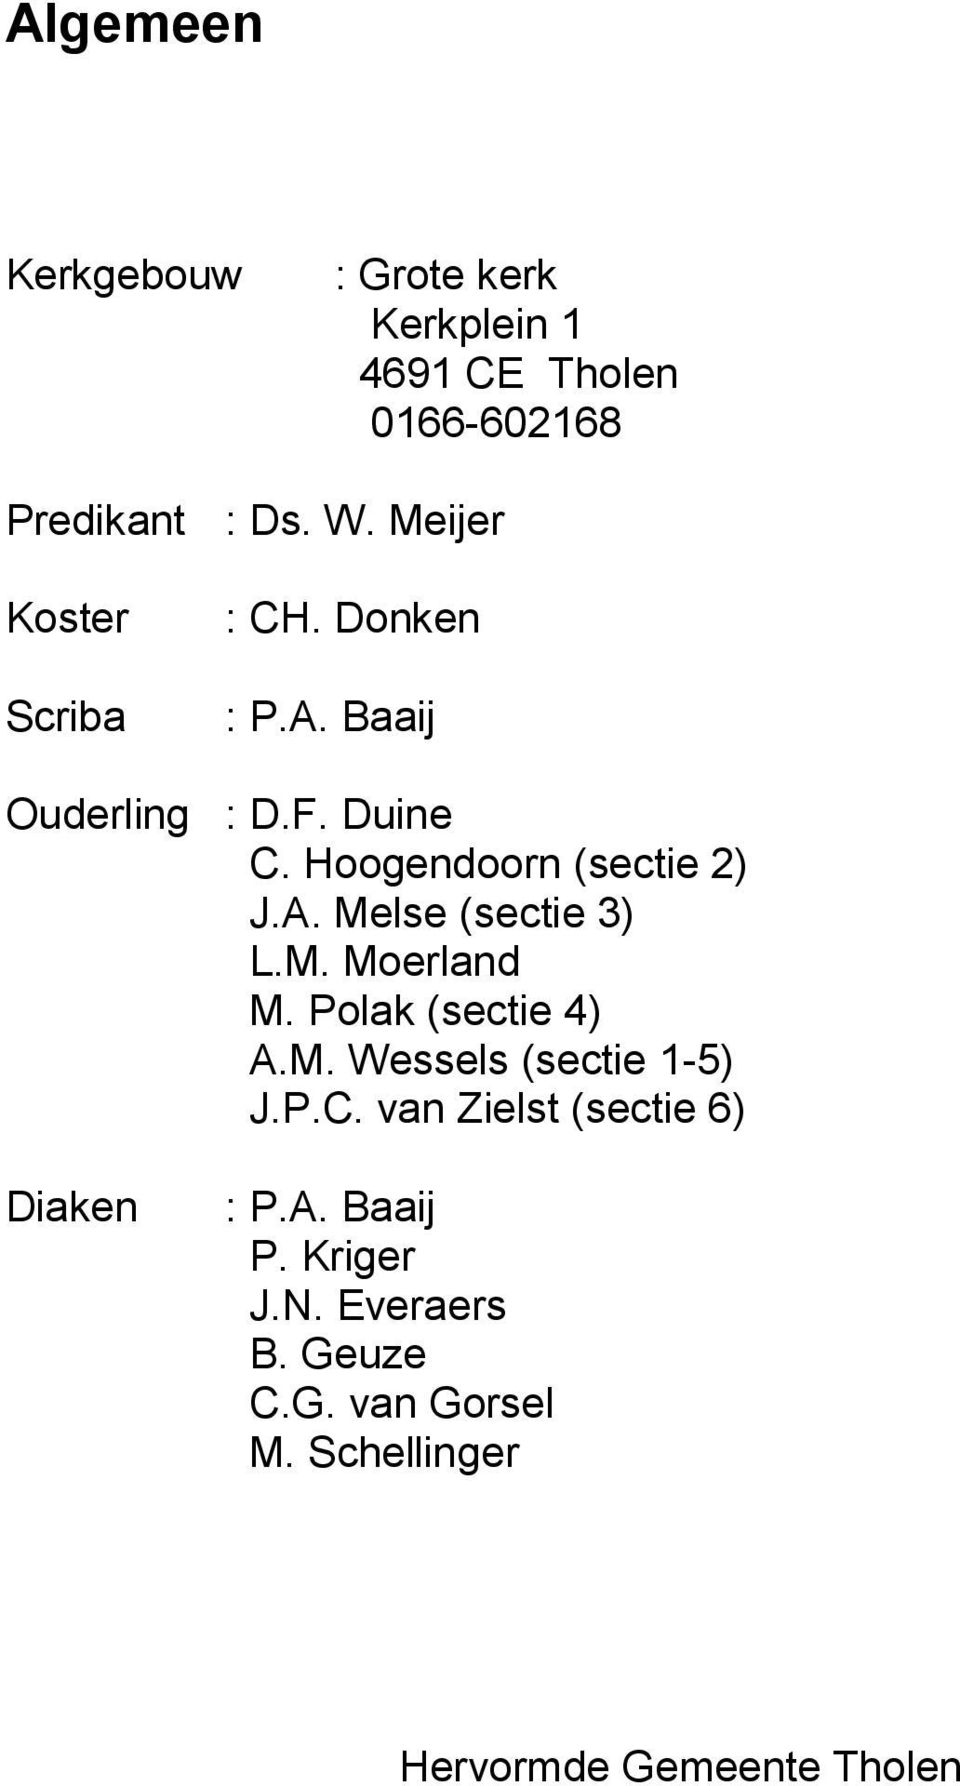 Hoogendoorn (sectie 2) J.A. Melse (sectie 3) L.M. Moerland M. Polak (sectie 4) A.M. Wessels (sectie 1-5) J.